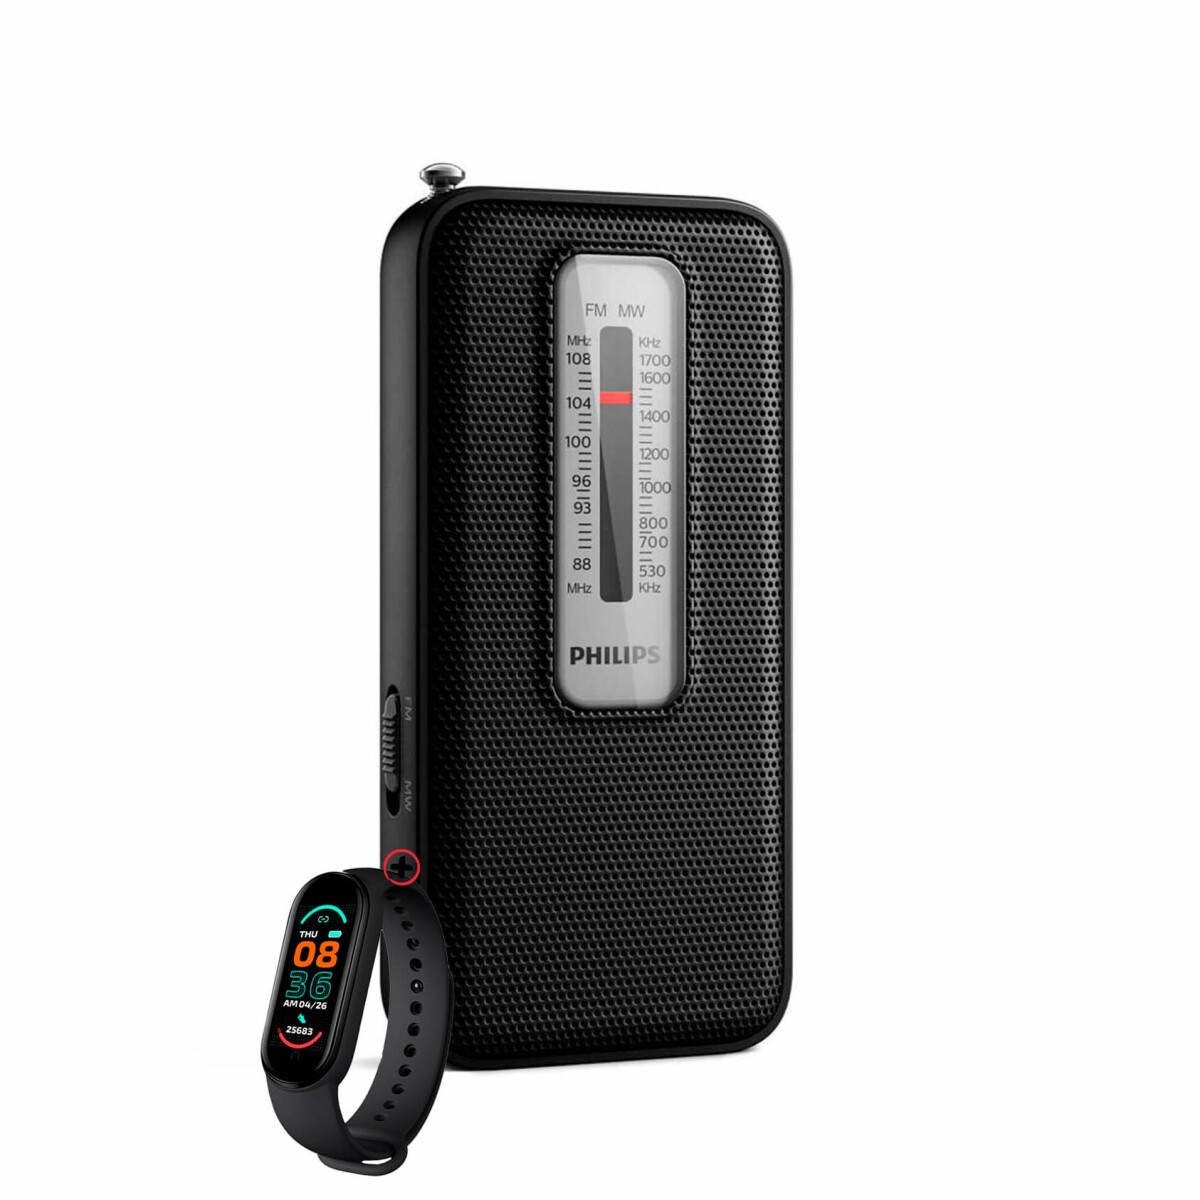 Radio Portátil Philips Tar1506 Fm/mw Analógica + Smartwatch 